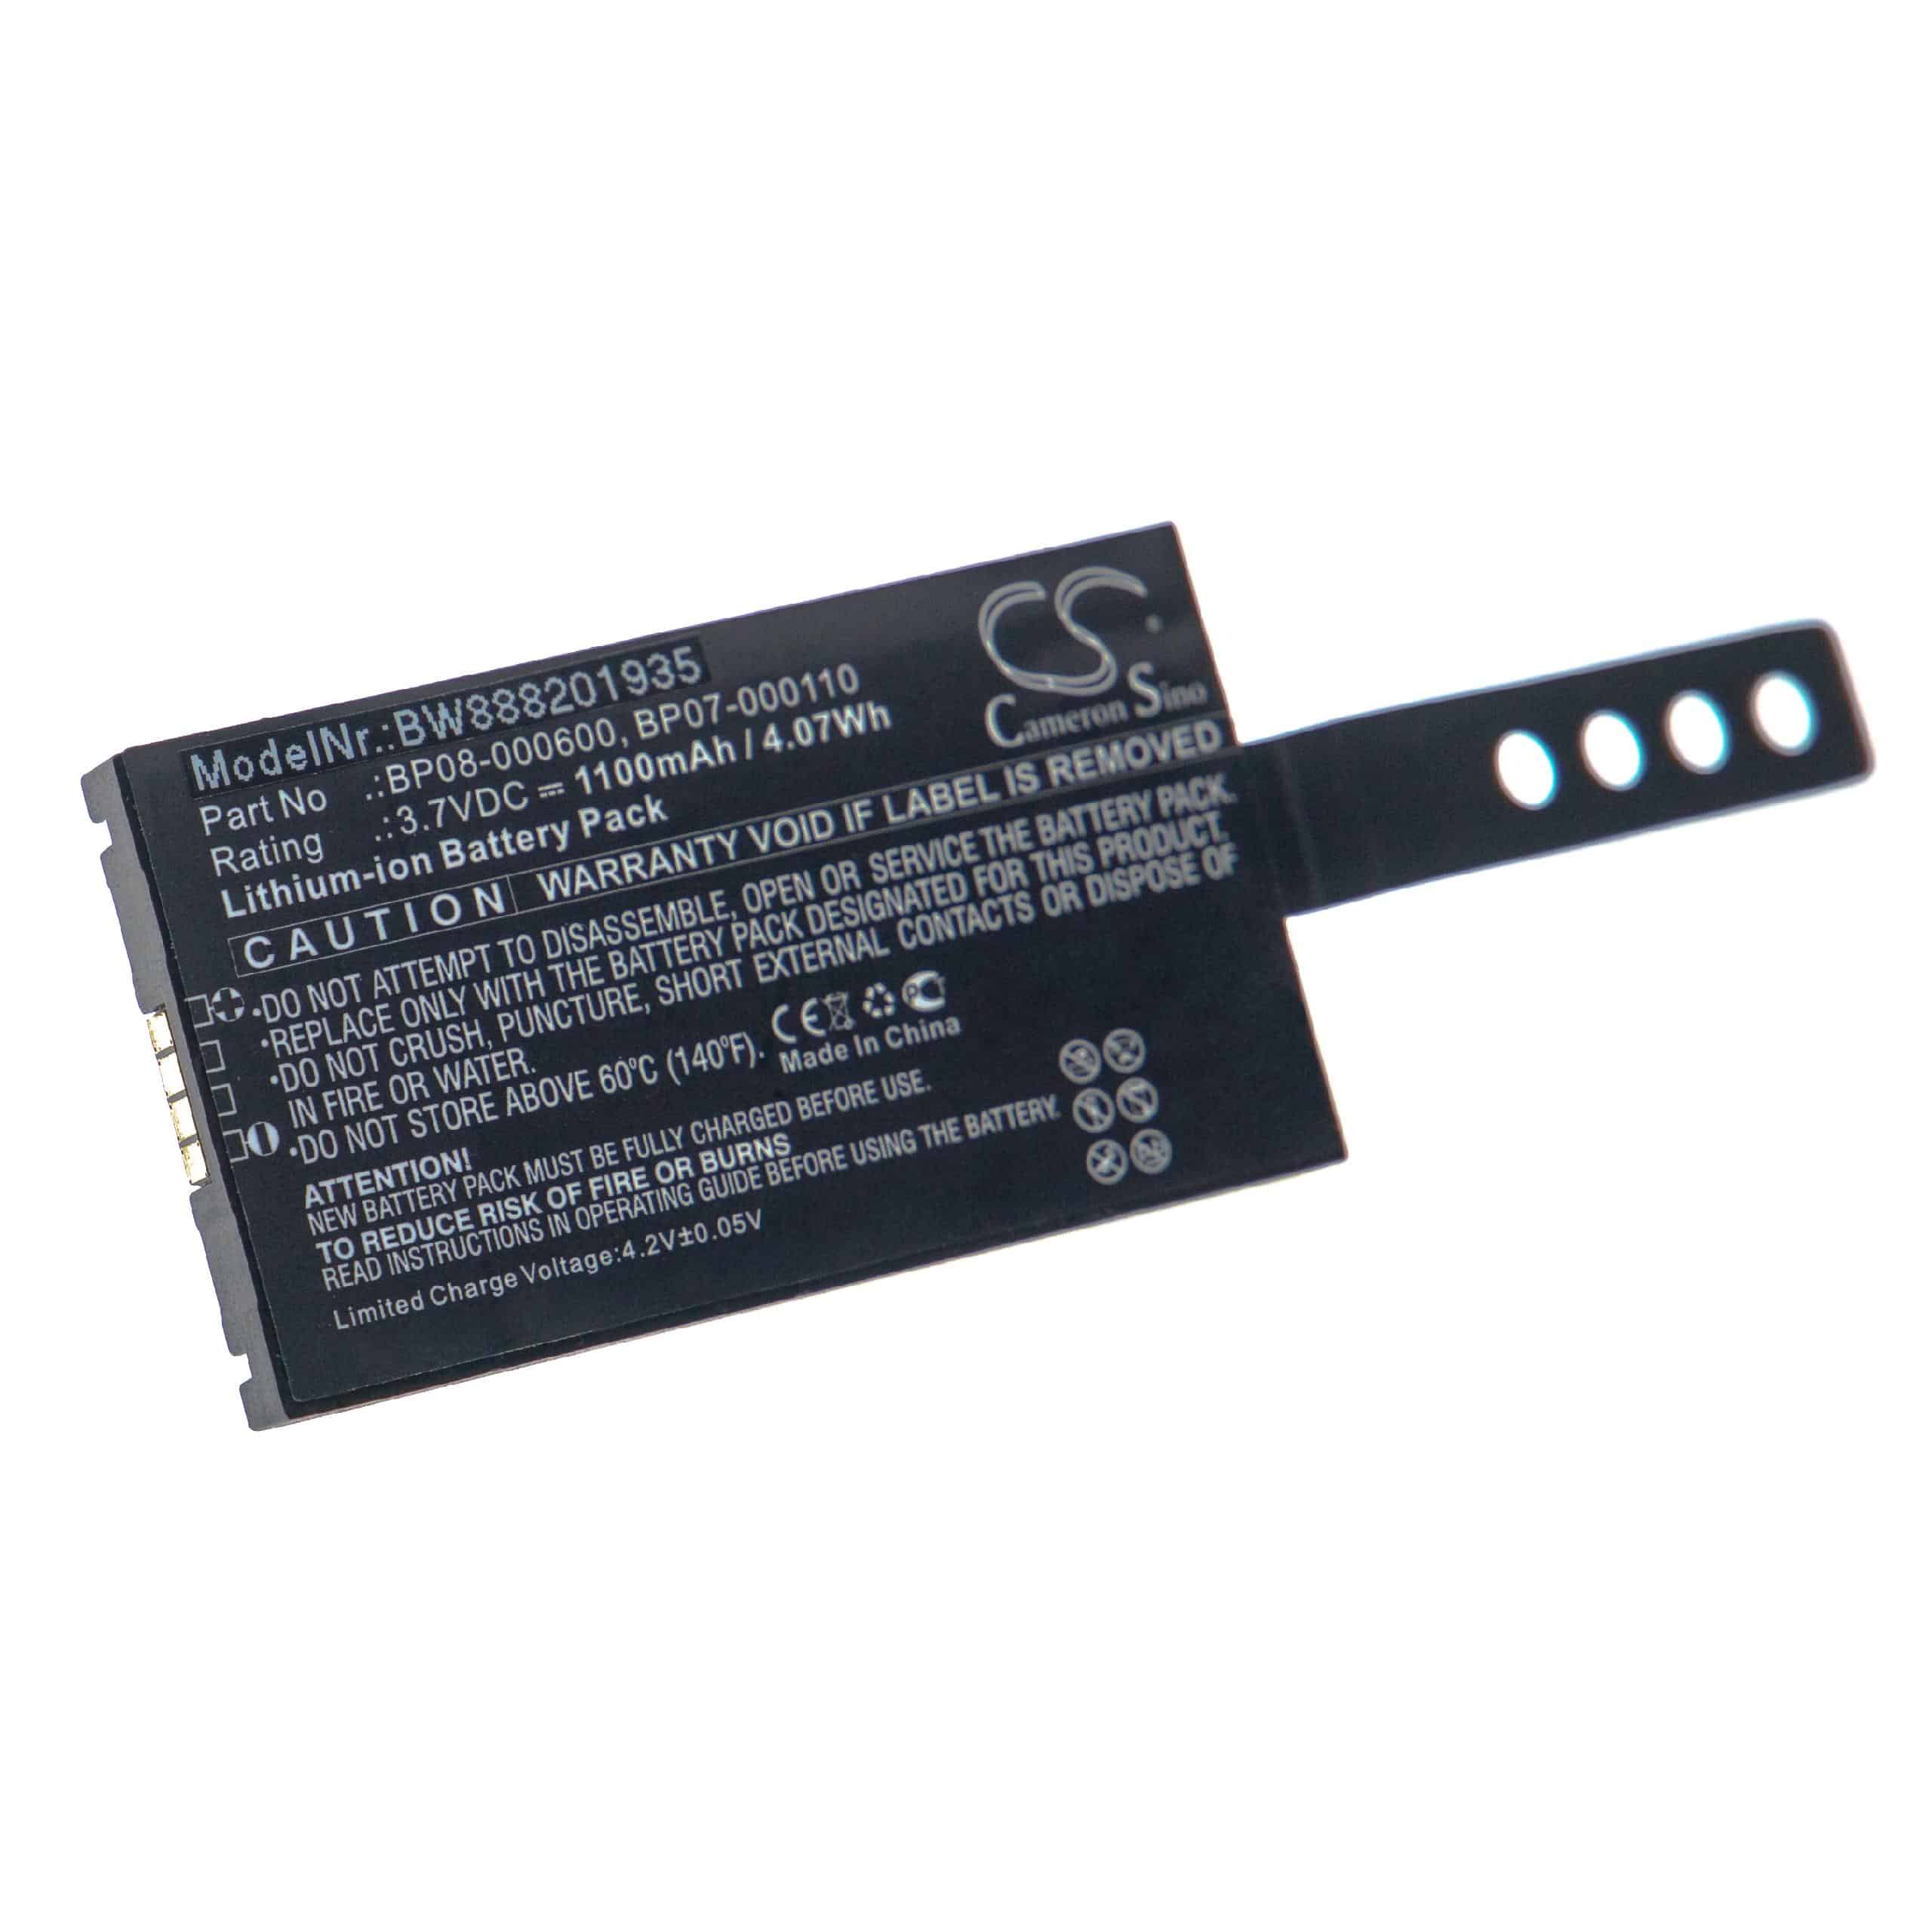 Batterie remplace Datalogic 11300794, 3H21-00000370 pour scanner de code-barre - 1100mAh 3,7V Li-ion